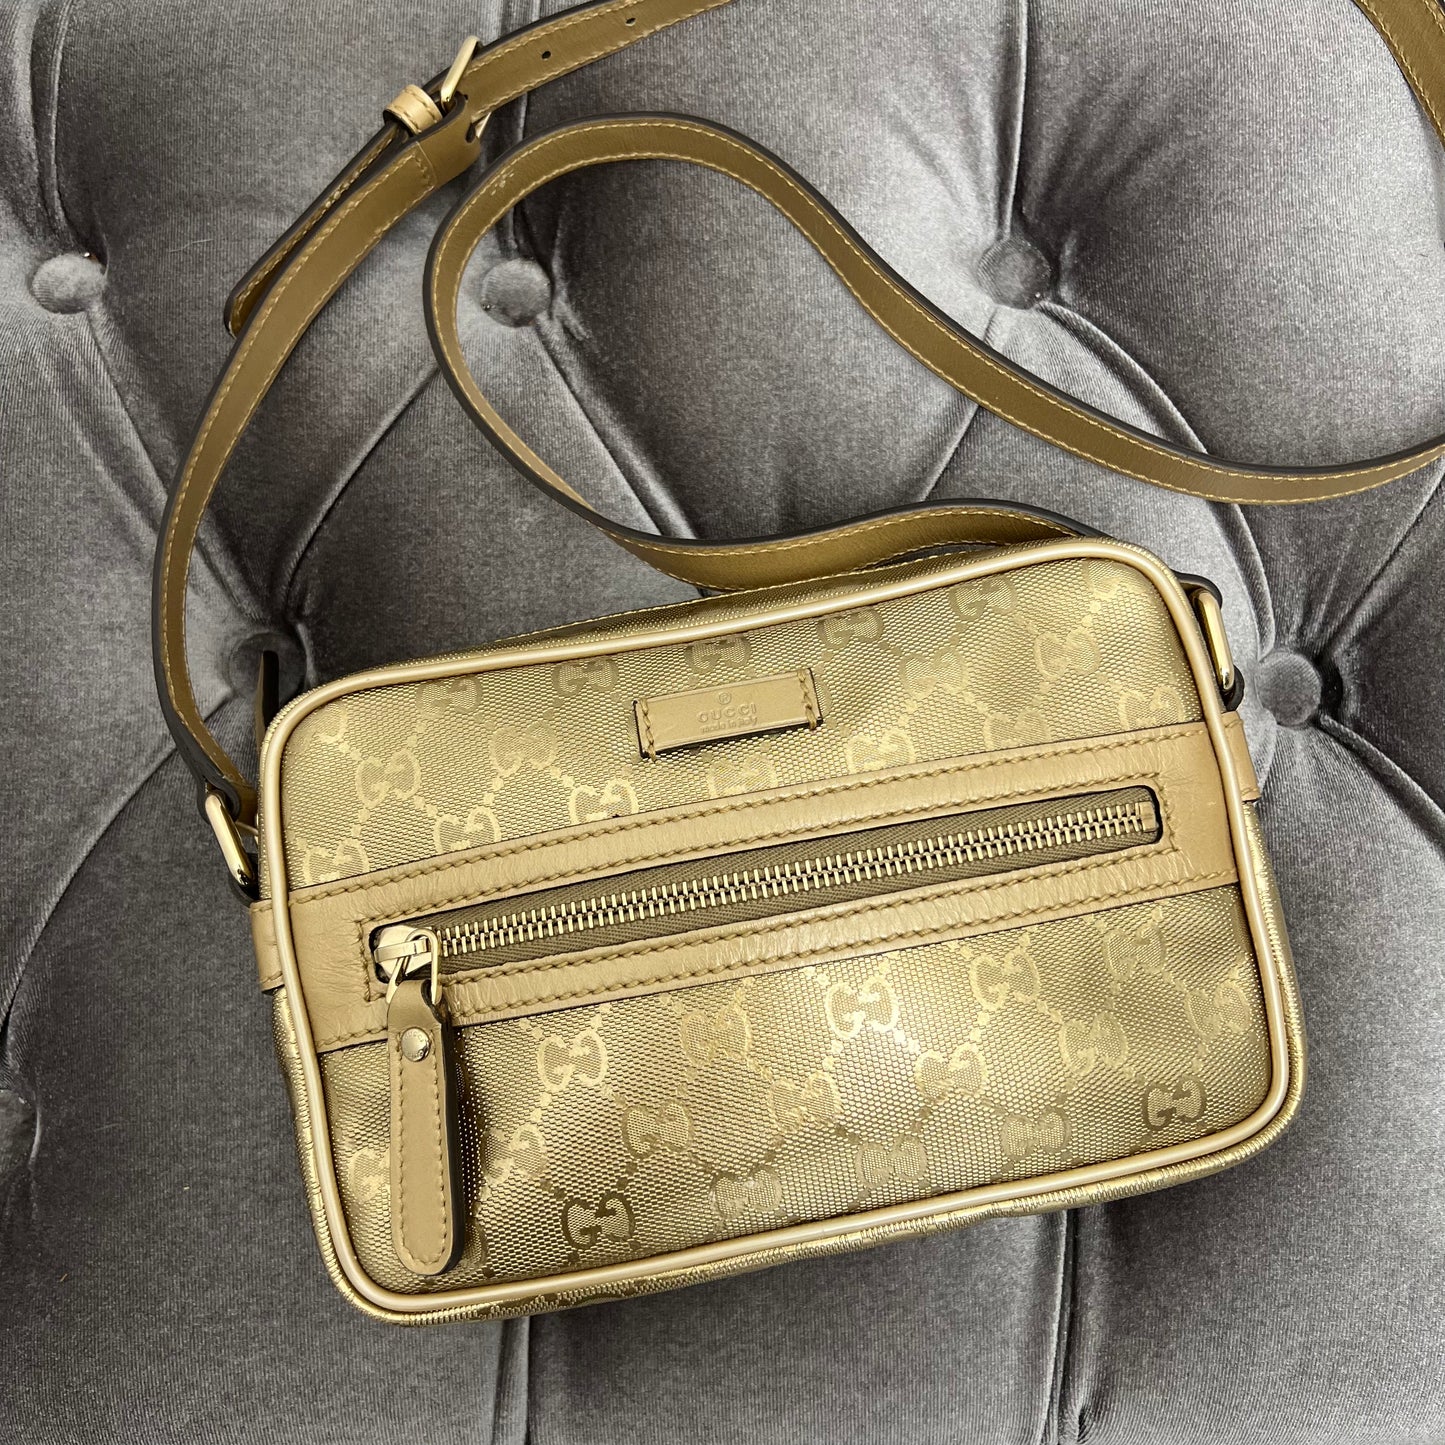 Gucci Camera Bag Gold